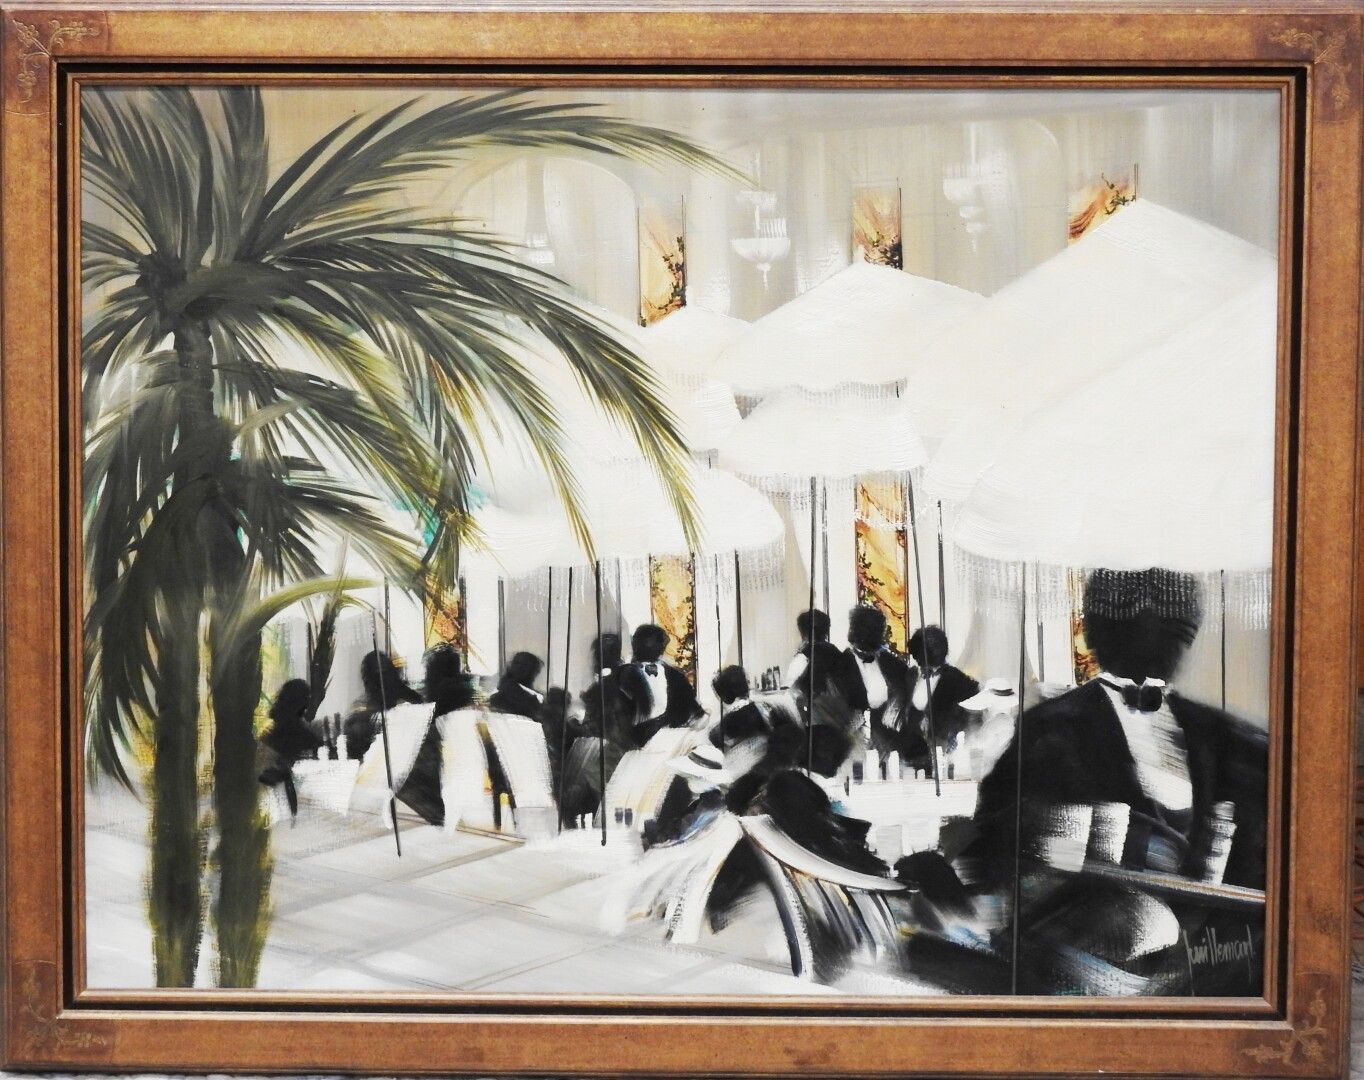 Null 多米尼克-吉耶马尔 (1949 - 2010)

酒店露台

布面油画，右下角有签名

89 x 116 cm